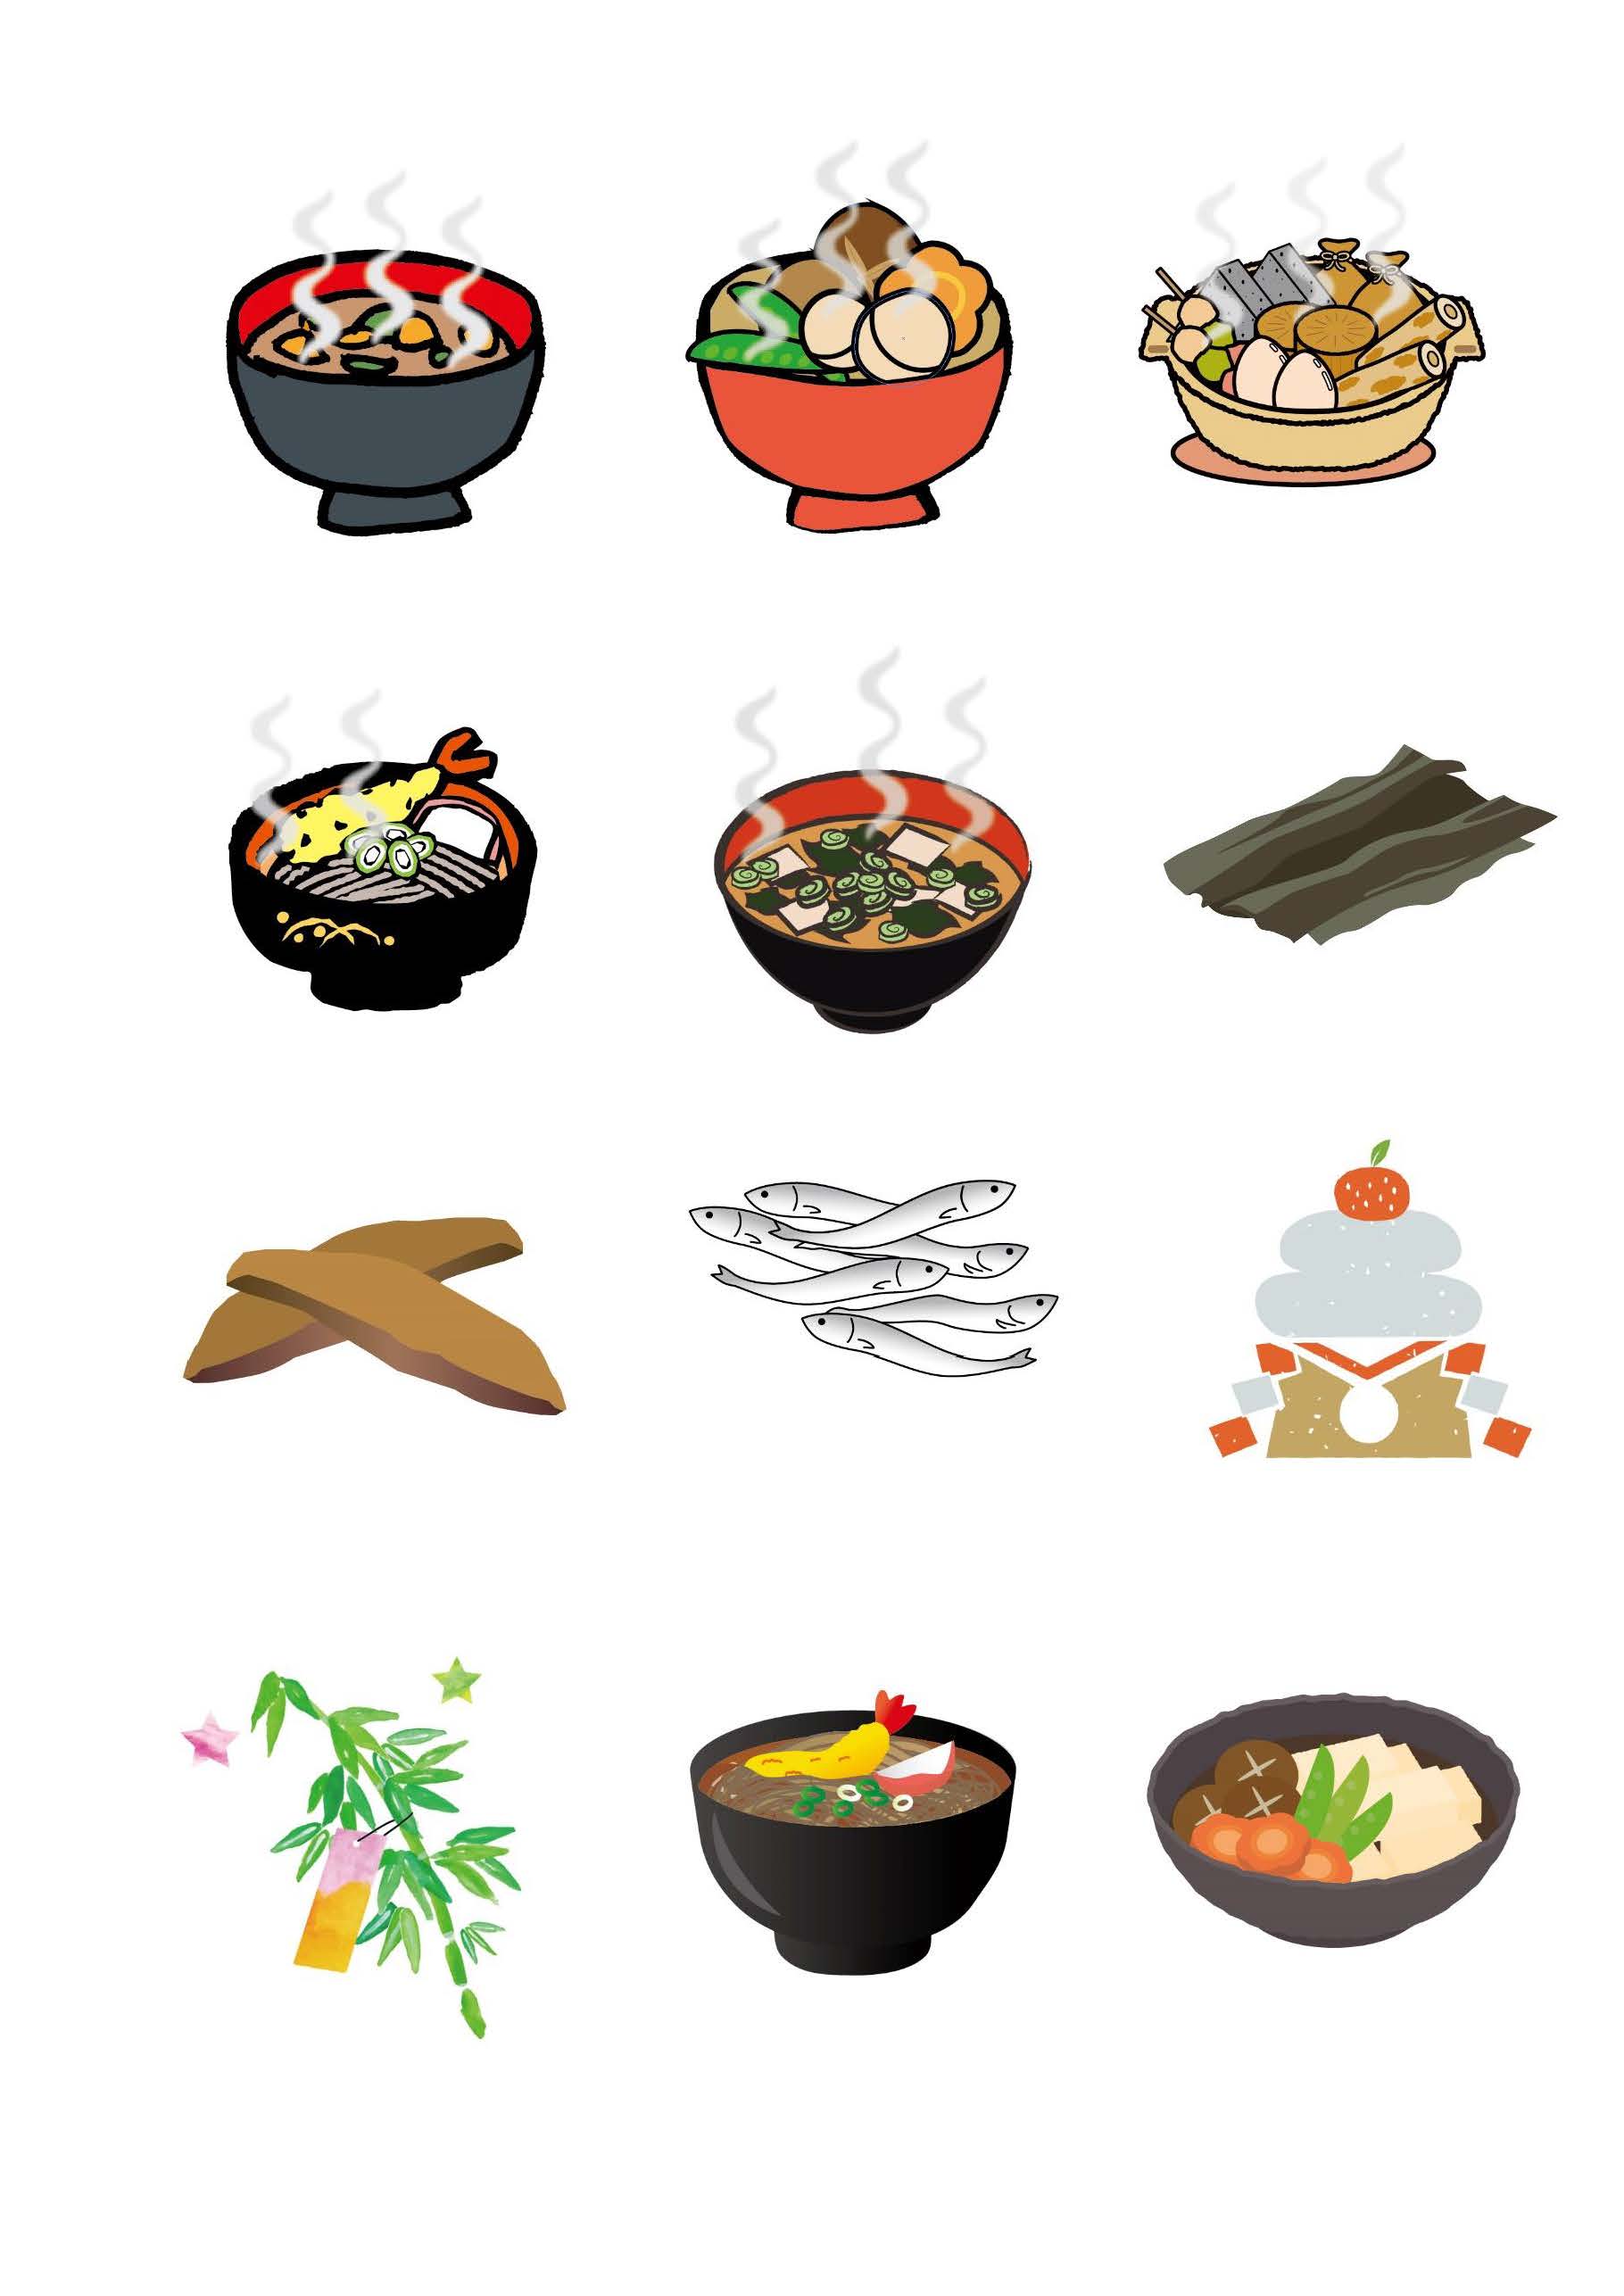 だしで味わう和食の日 資料一覧 一般社団法人和食文化国民会議 Washoku Japan